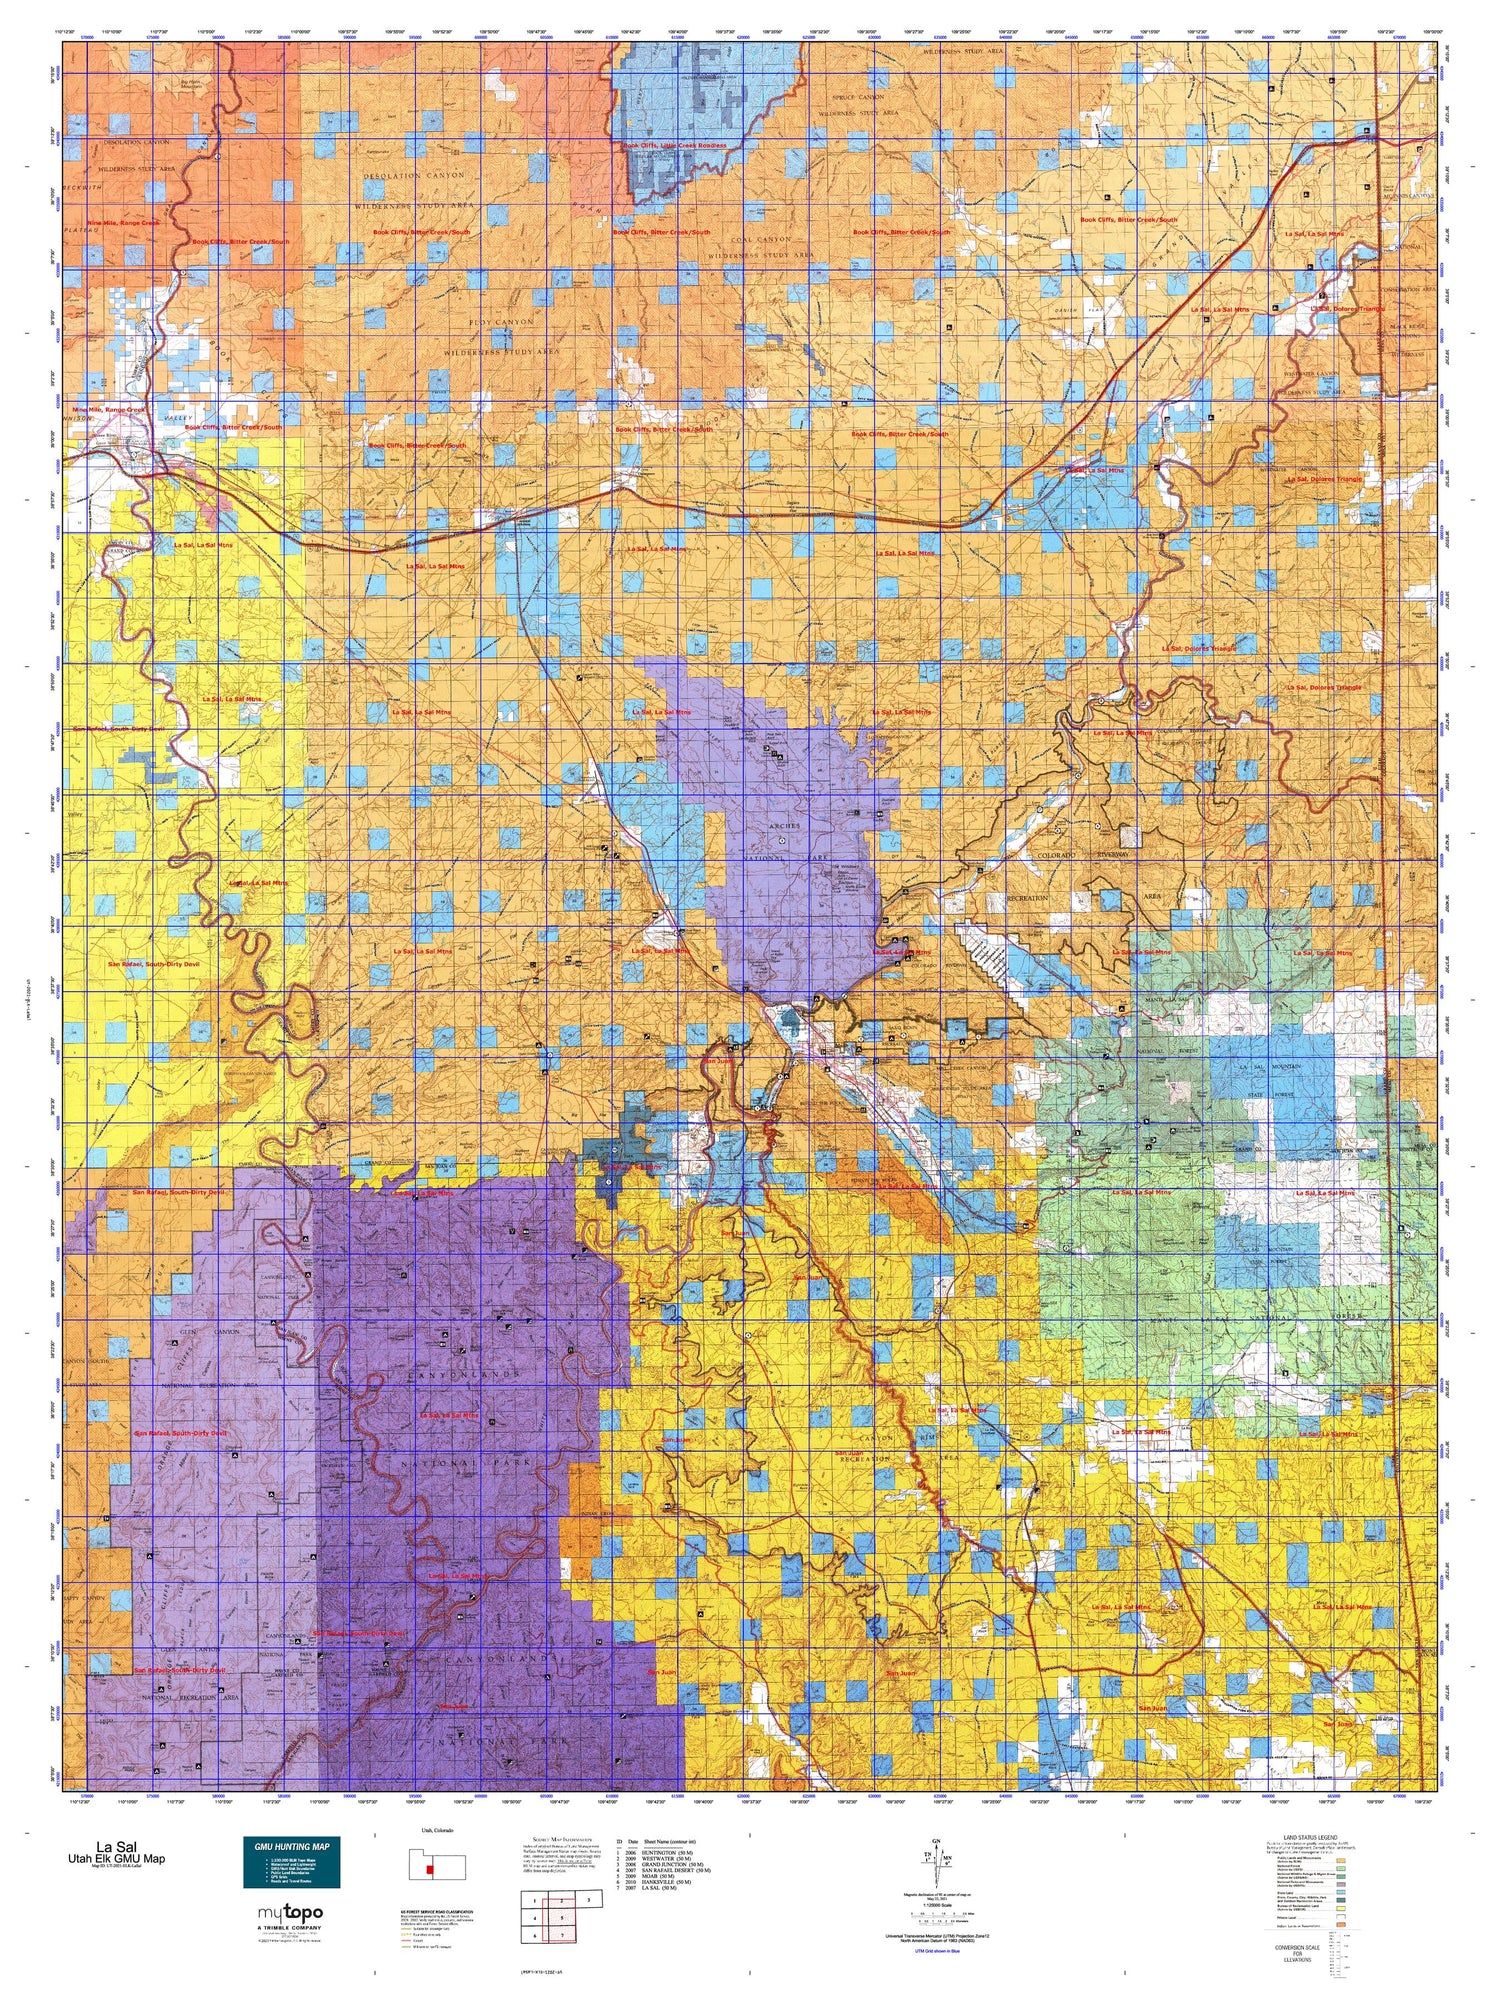 Utah Elk GMU La Sal Map Image